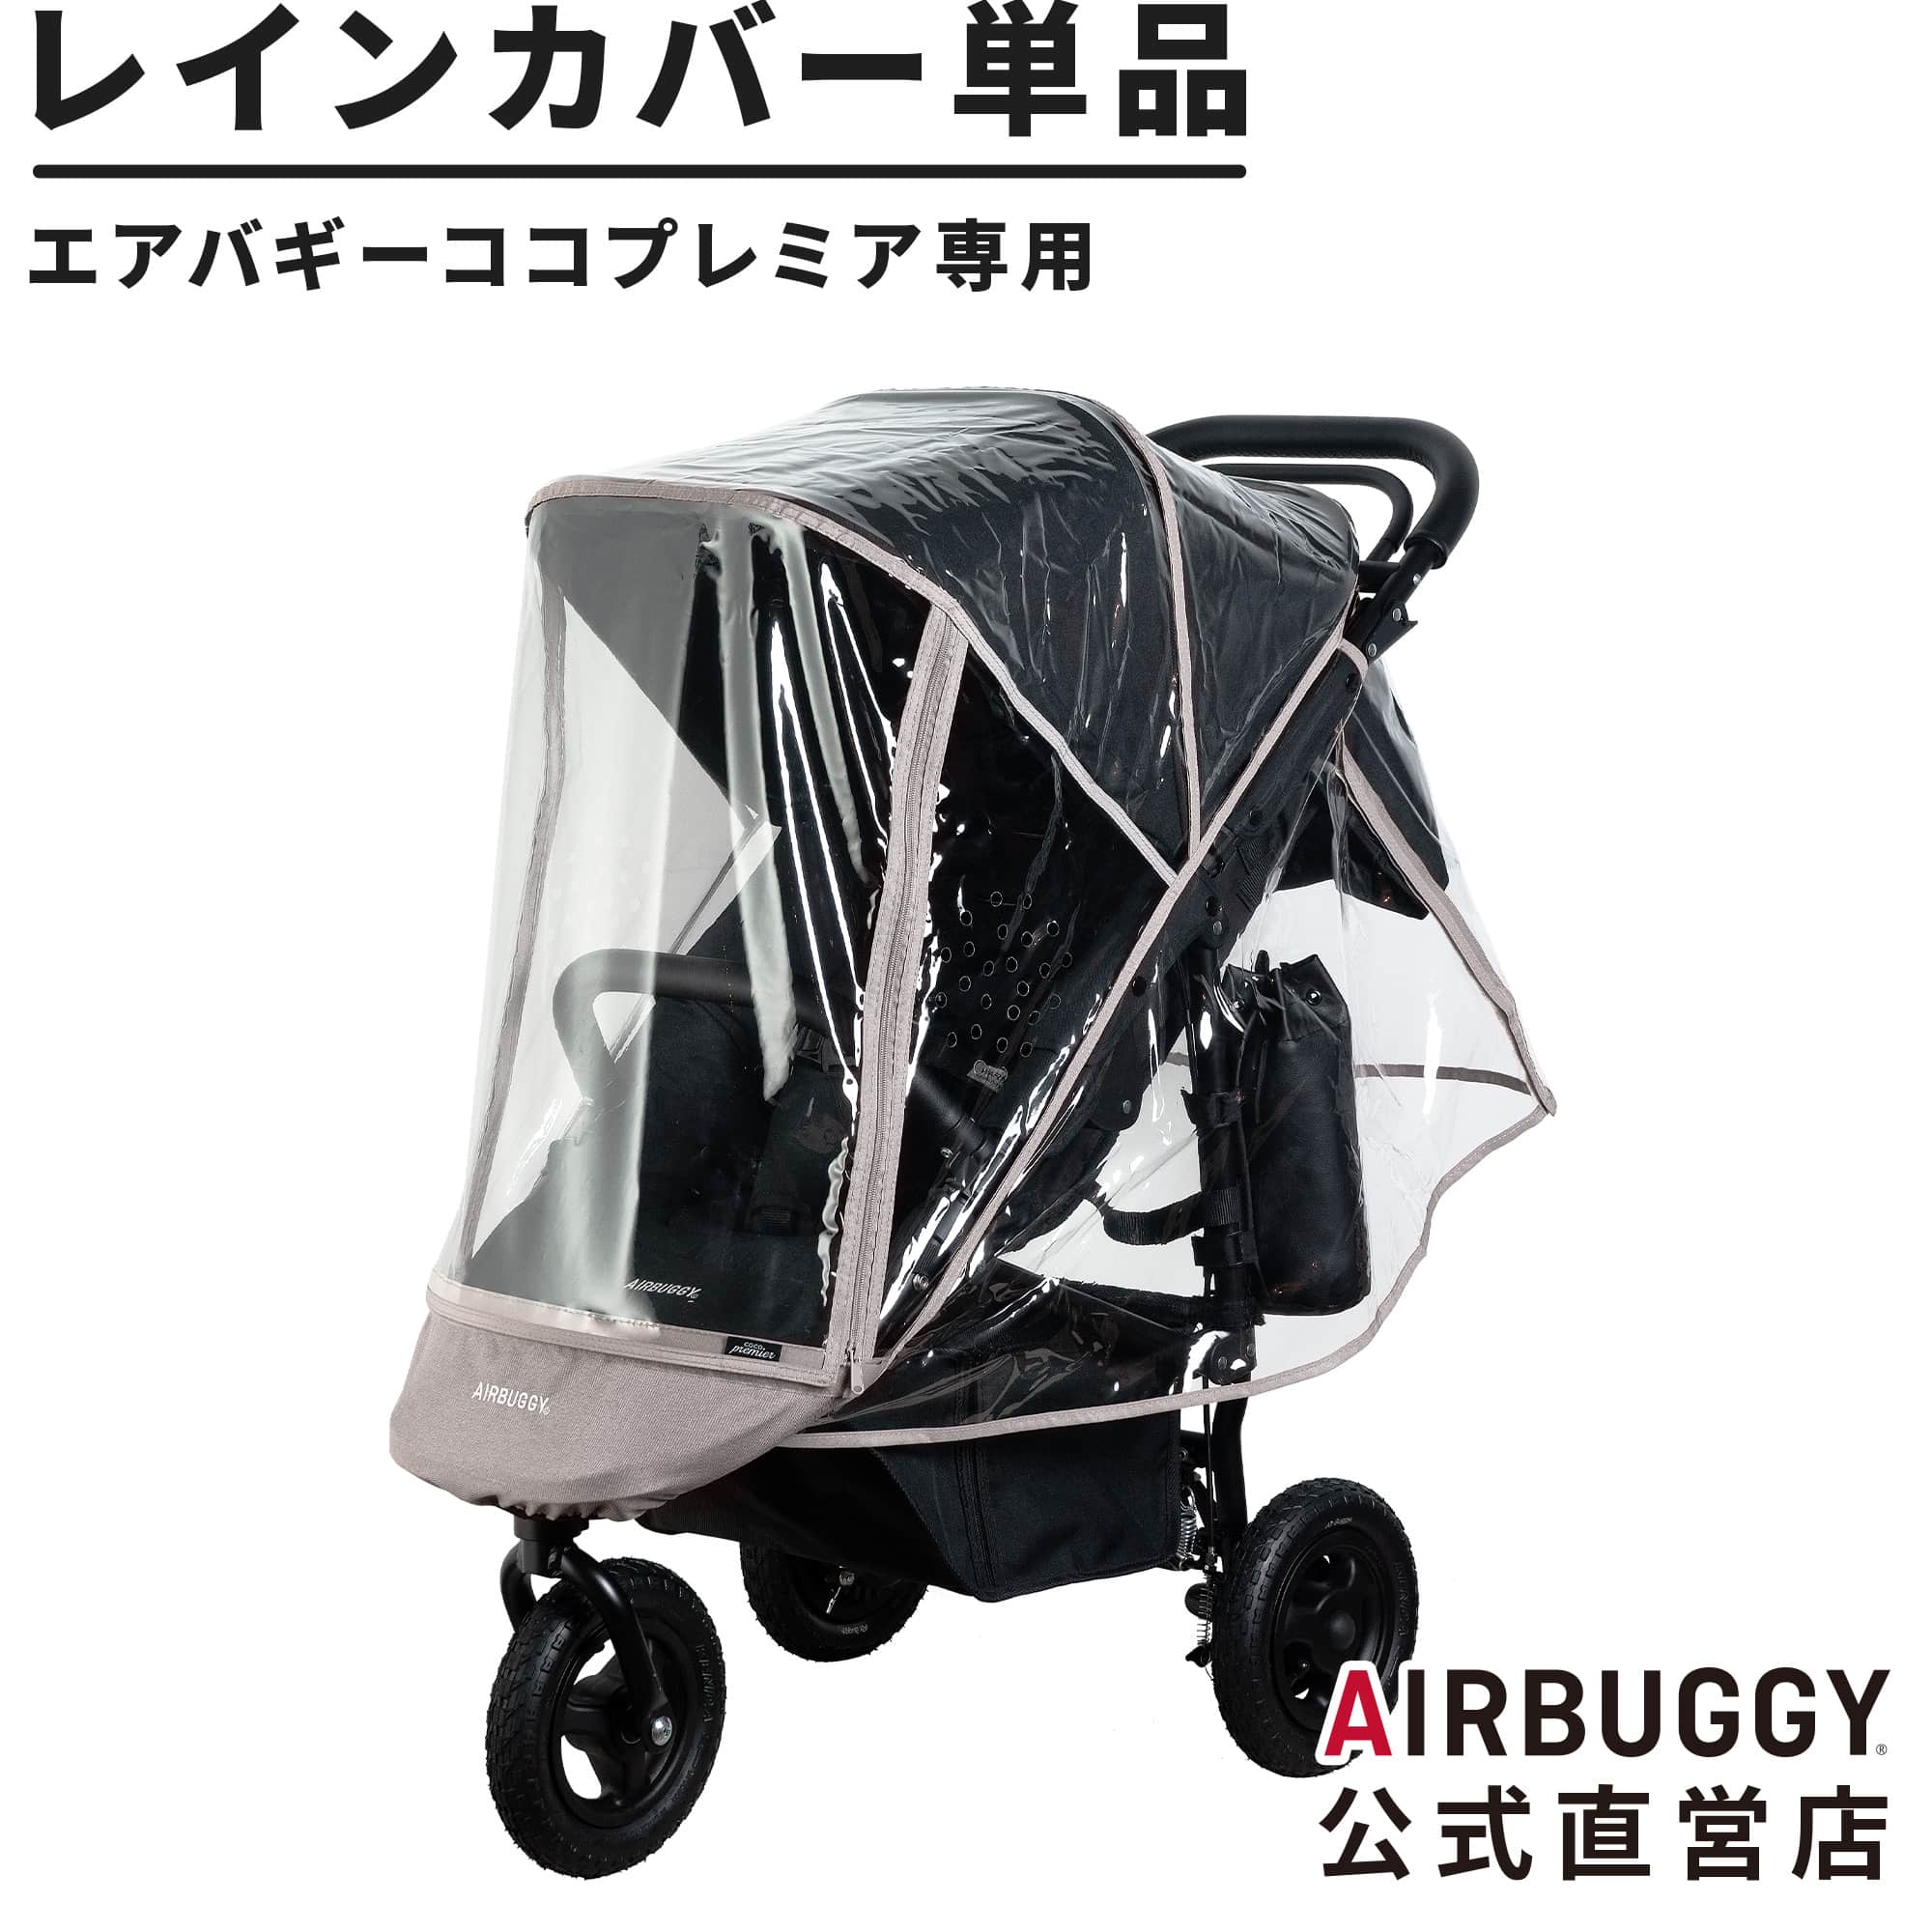 独創的 air buggy ストローラーカバー